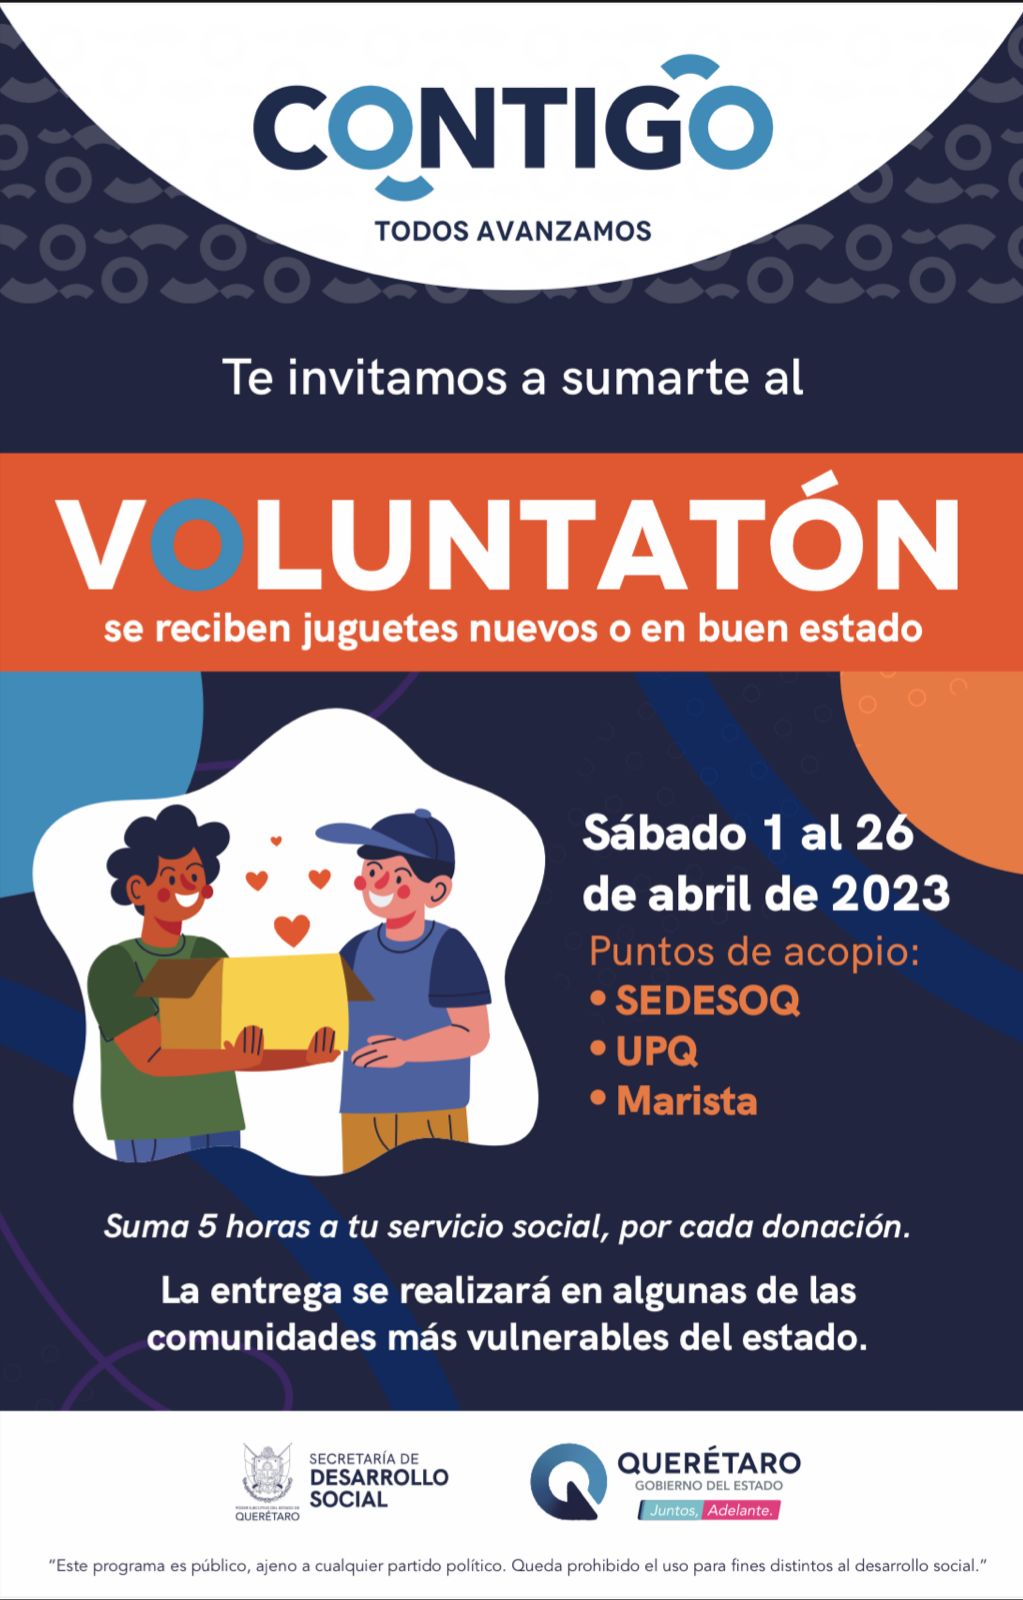 dona juguetes para pequeños vulnerables de Querétaro